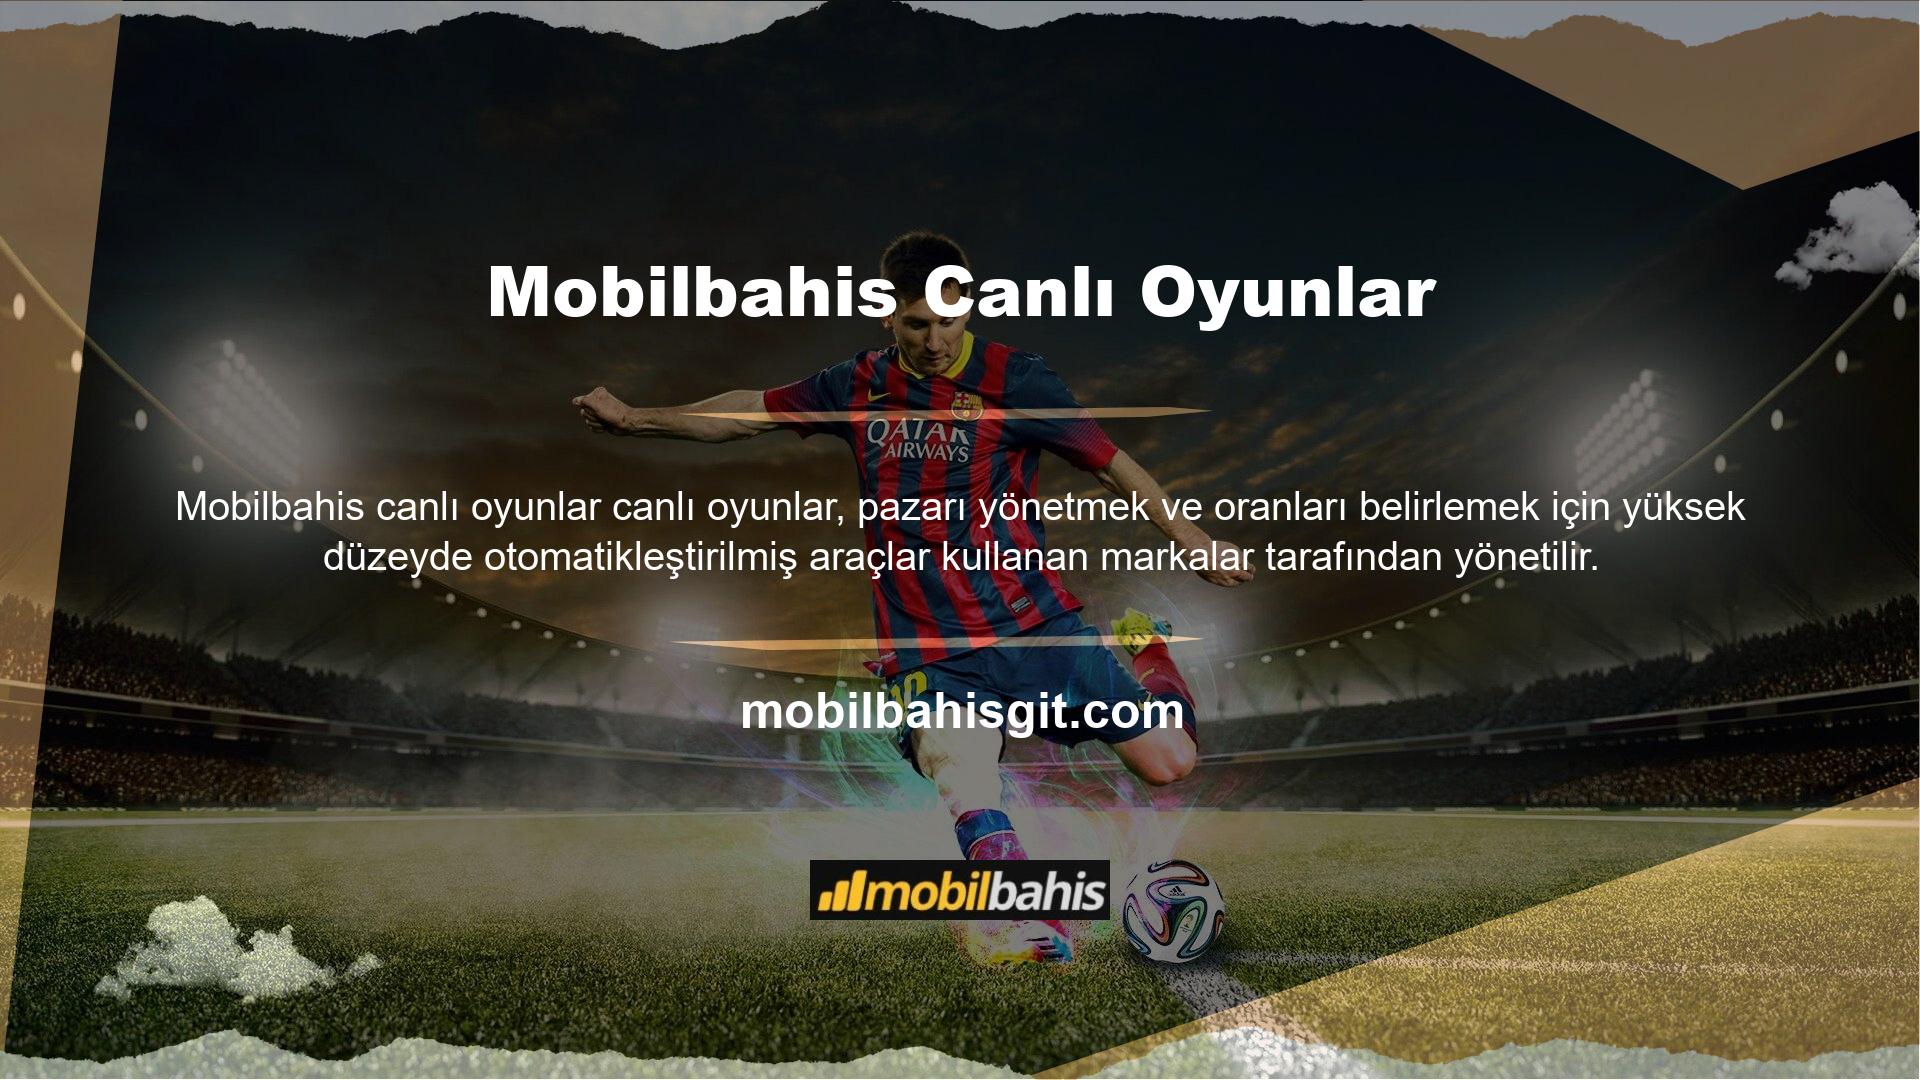 Mobilbahis web sitesi çeşitli aktiviteler ve çeşitli oyunlar sunmaktadır